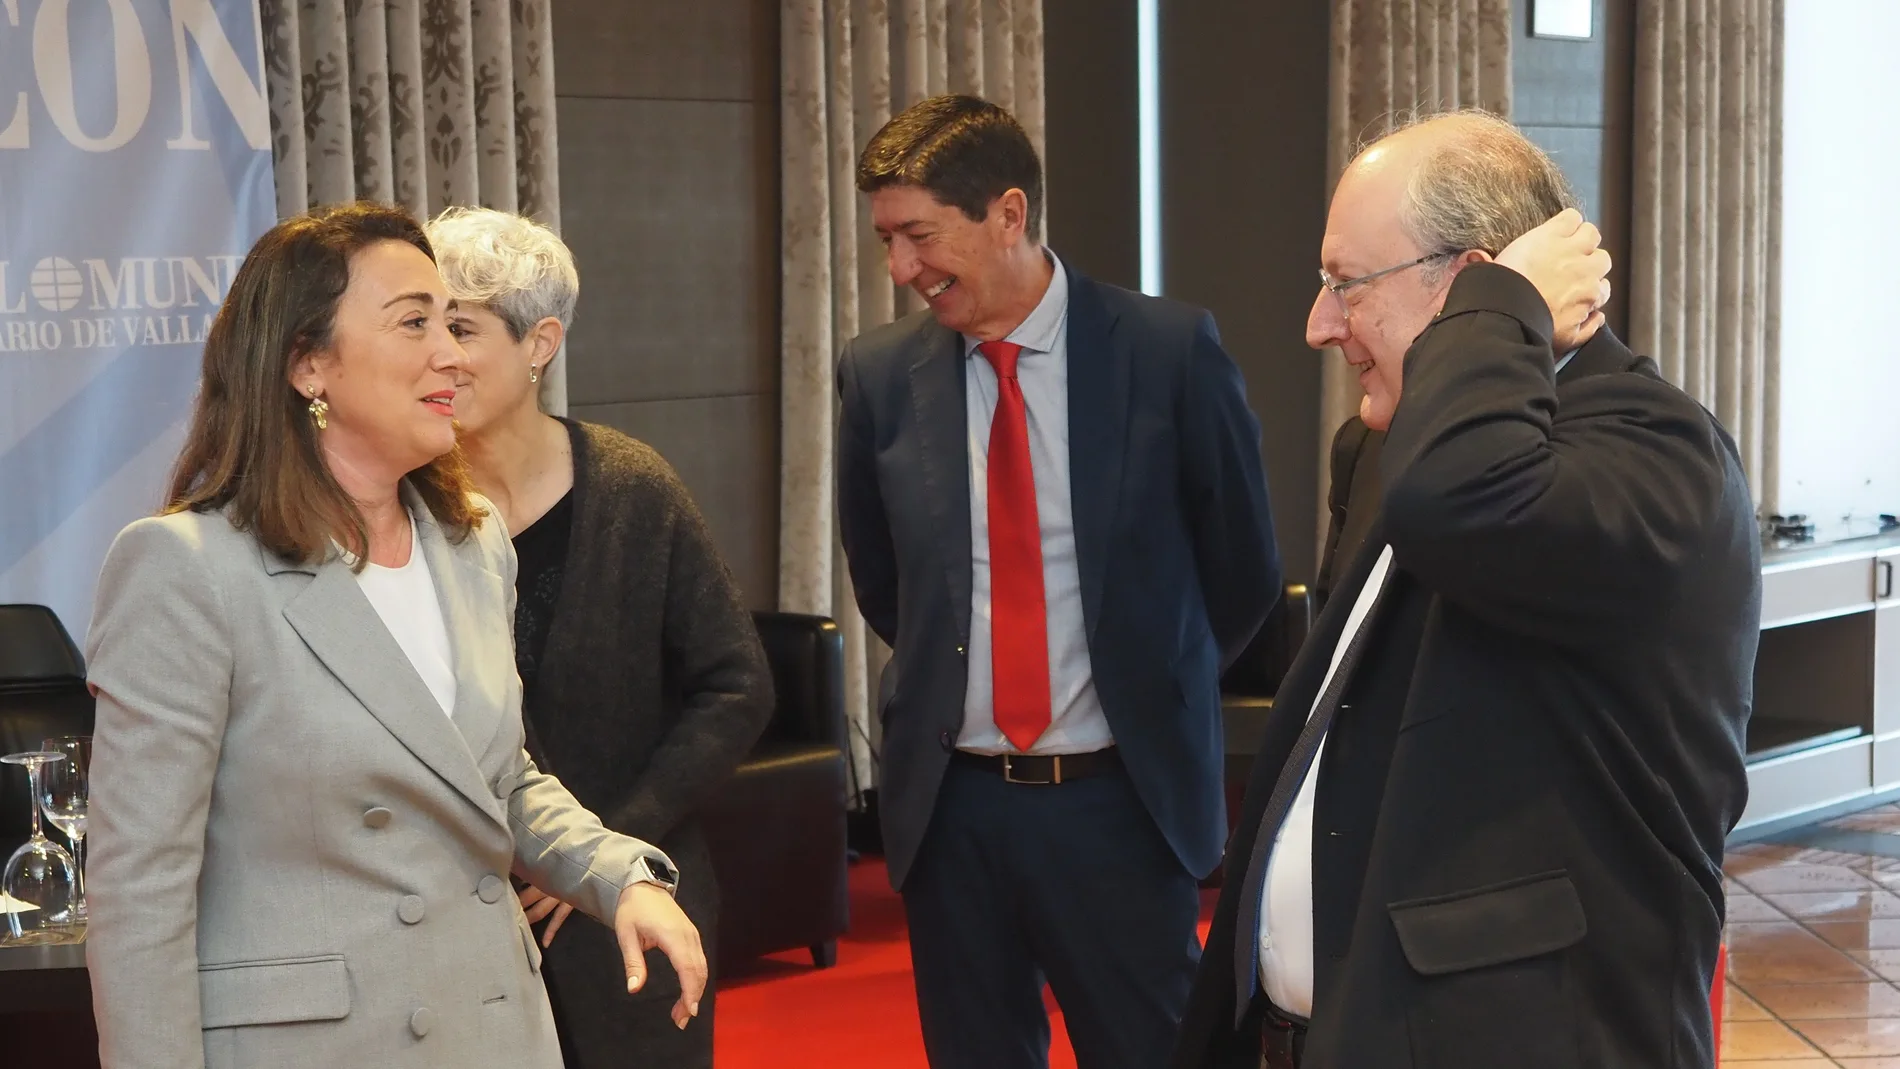 La consejera María González Corral conversa con el presidente del CES Castilla y León, Enrique Cabero